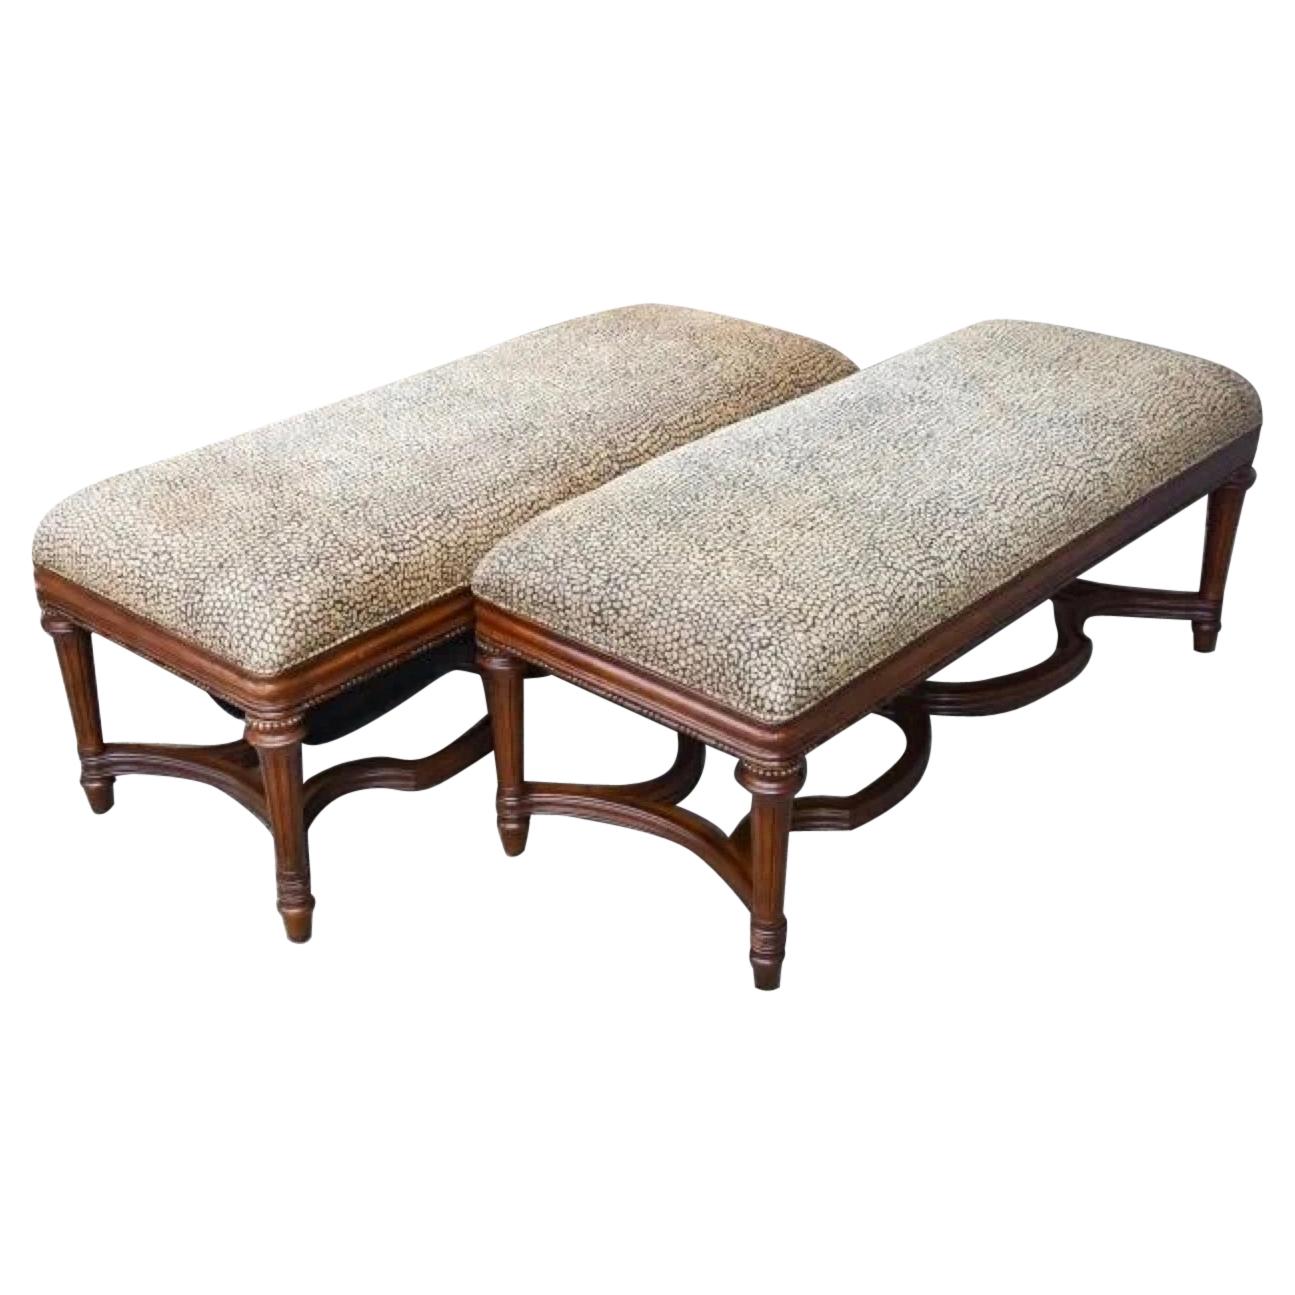 Regency Style Mahogany Bench, Sold Singly